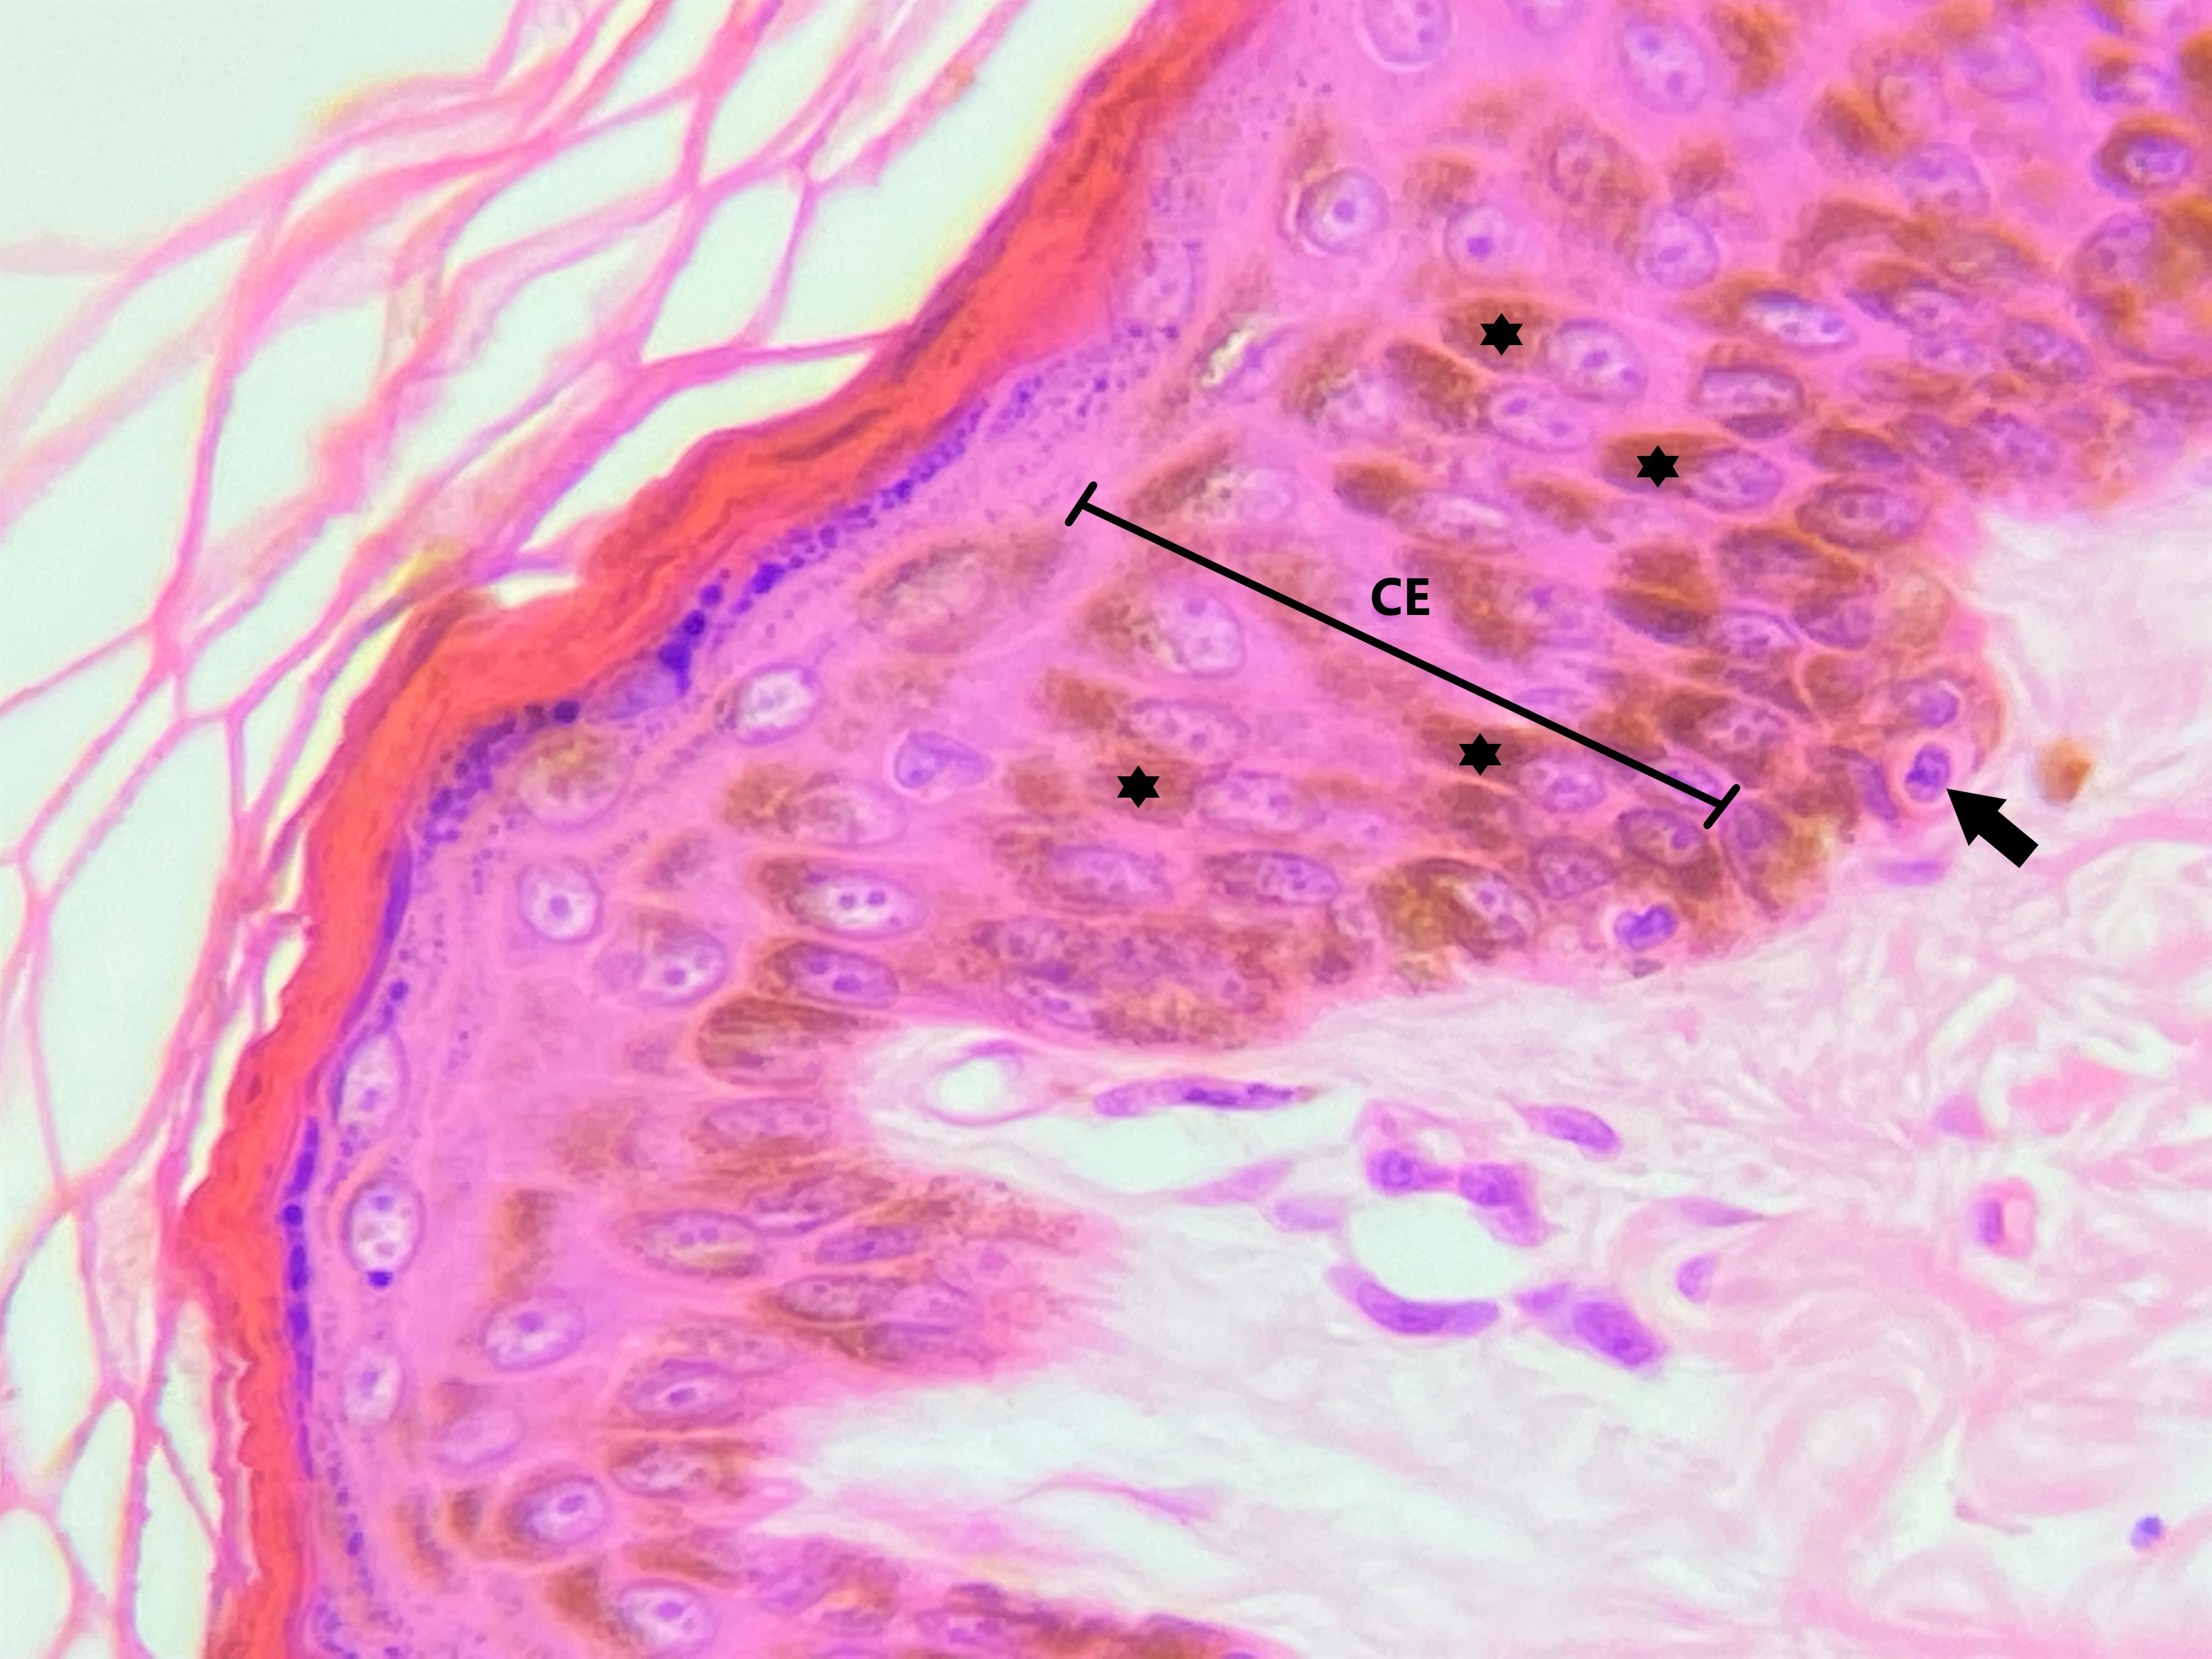 Lâmina: Pele fina (H&E - Aumento: 400x).  Epitélio estratificado pavimentoso queratinizado da pele delgada (ou fina). Na epiderme (Ep) o epitélio possui quatro camadas. A camada basal (CB), também conhecida como camada germinativa, observa-se uma única fileira de células que estão apoiadas sobre a lâmina/membrana basal. Na camada basal são encontradas células-tronco que serão responsáveis pela renovação do epitélio. Geralmente as células basais são pequenas e de formato cuboide.